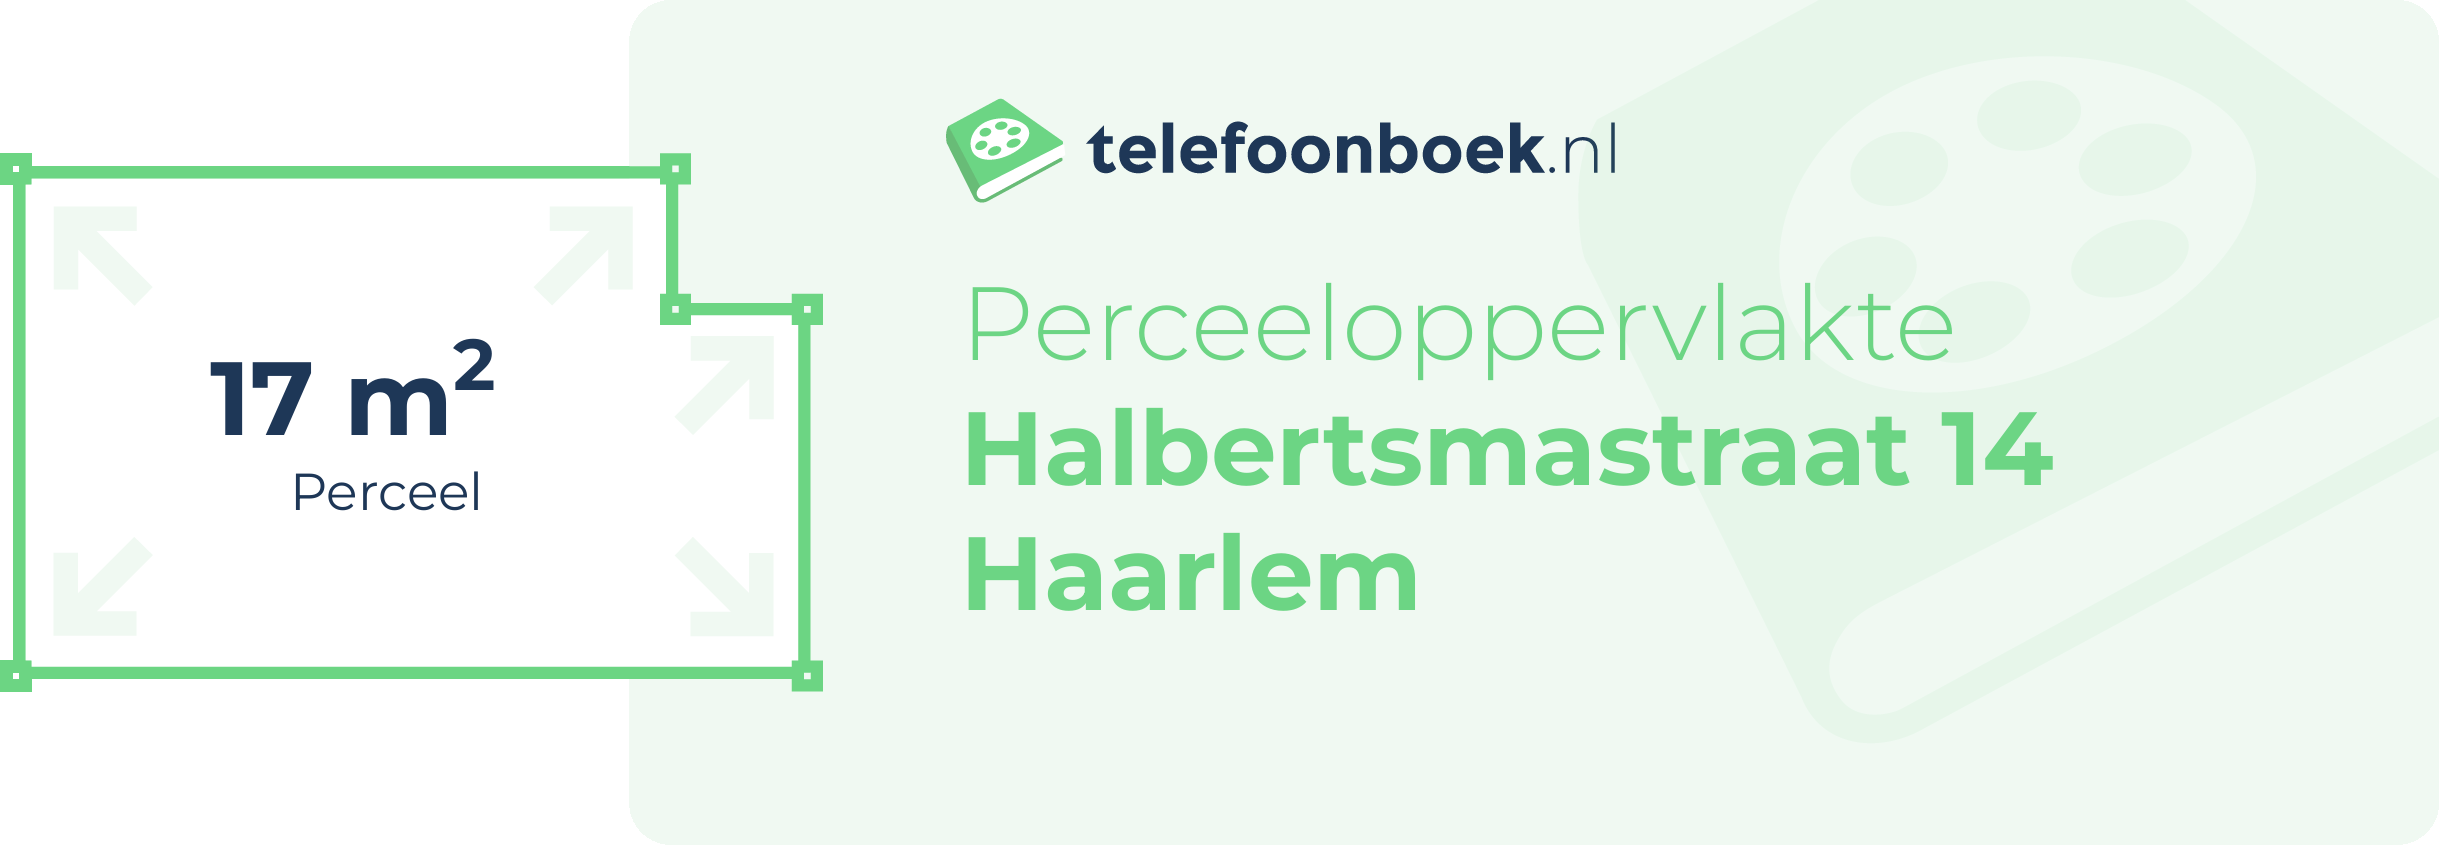 Perceeloppervlakte Halbertsmastraat 14 Haarlem